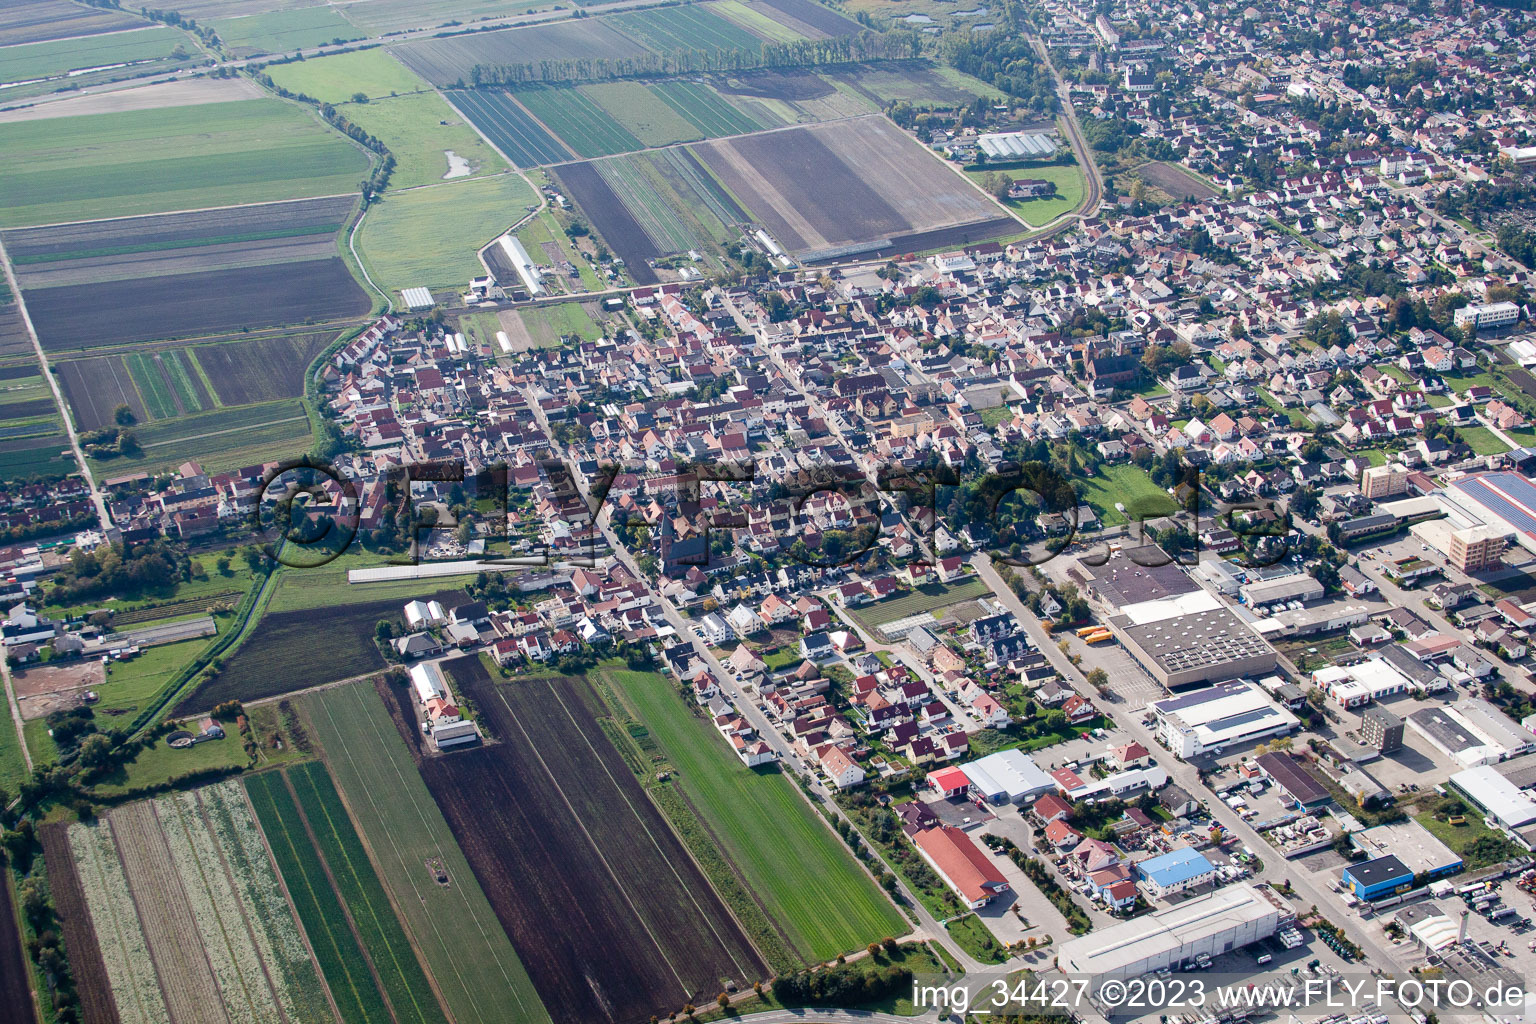 Maxdorf im Bundesland Rheinland-Pfalz, Deutschland von der Drohne aus gesehen